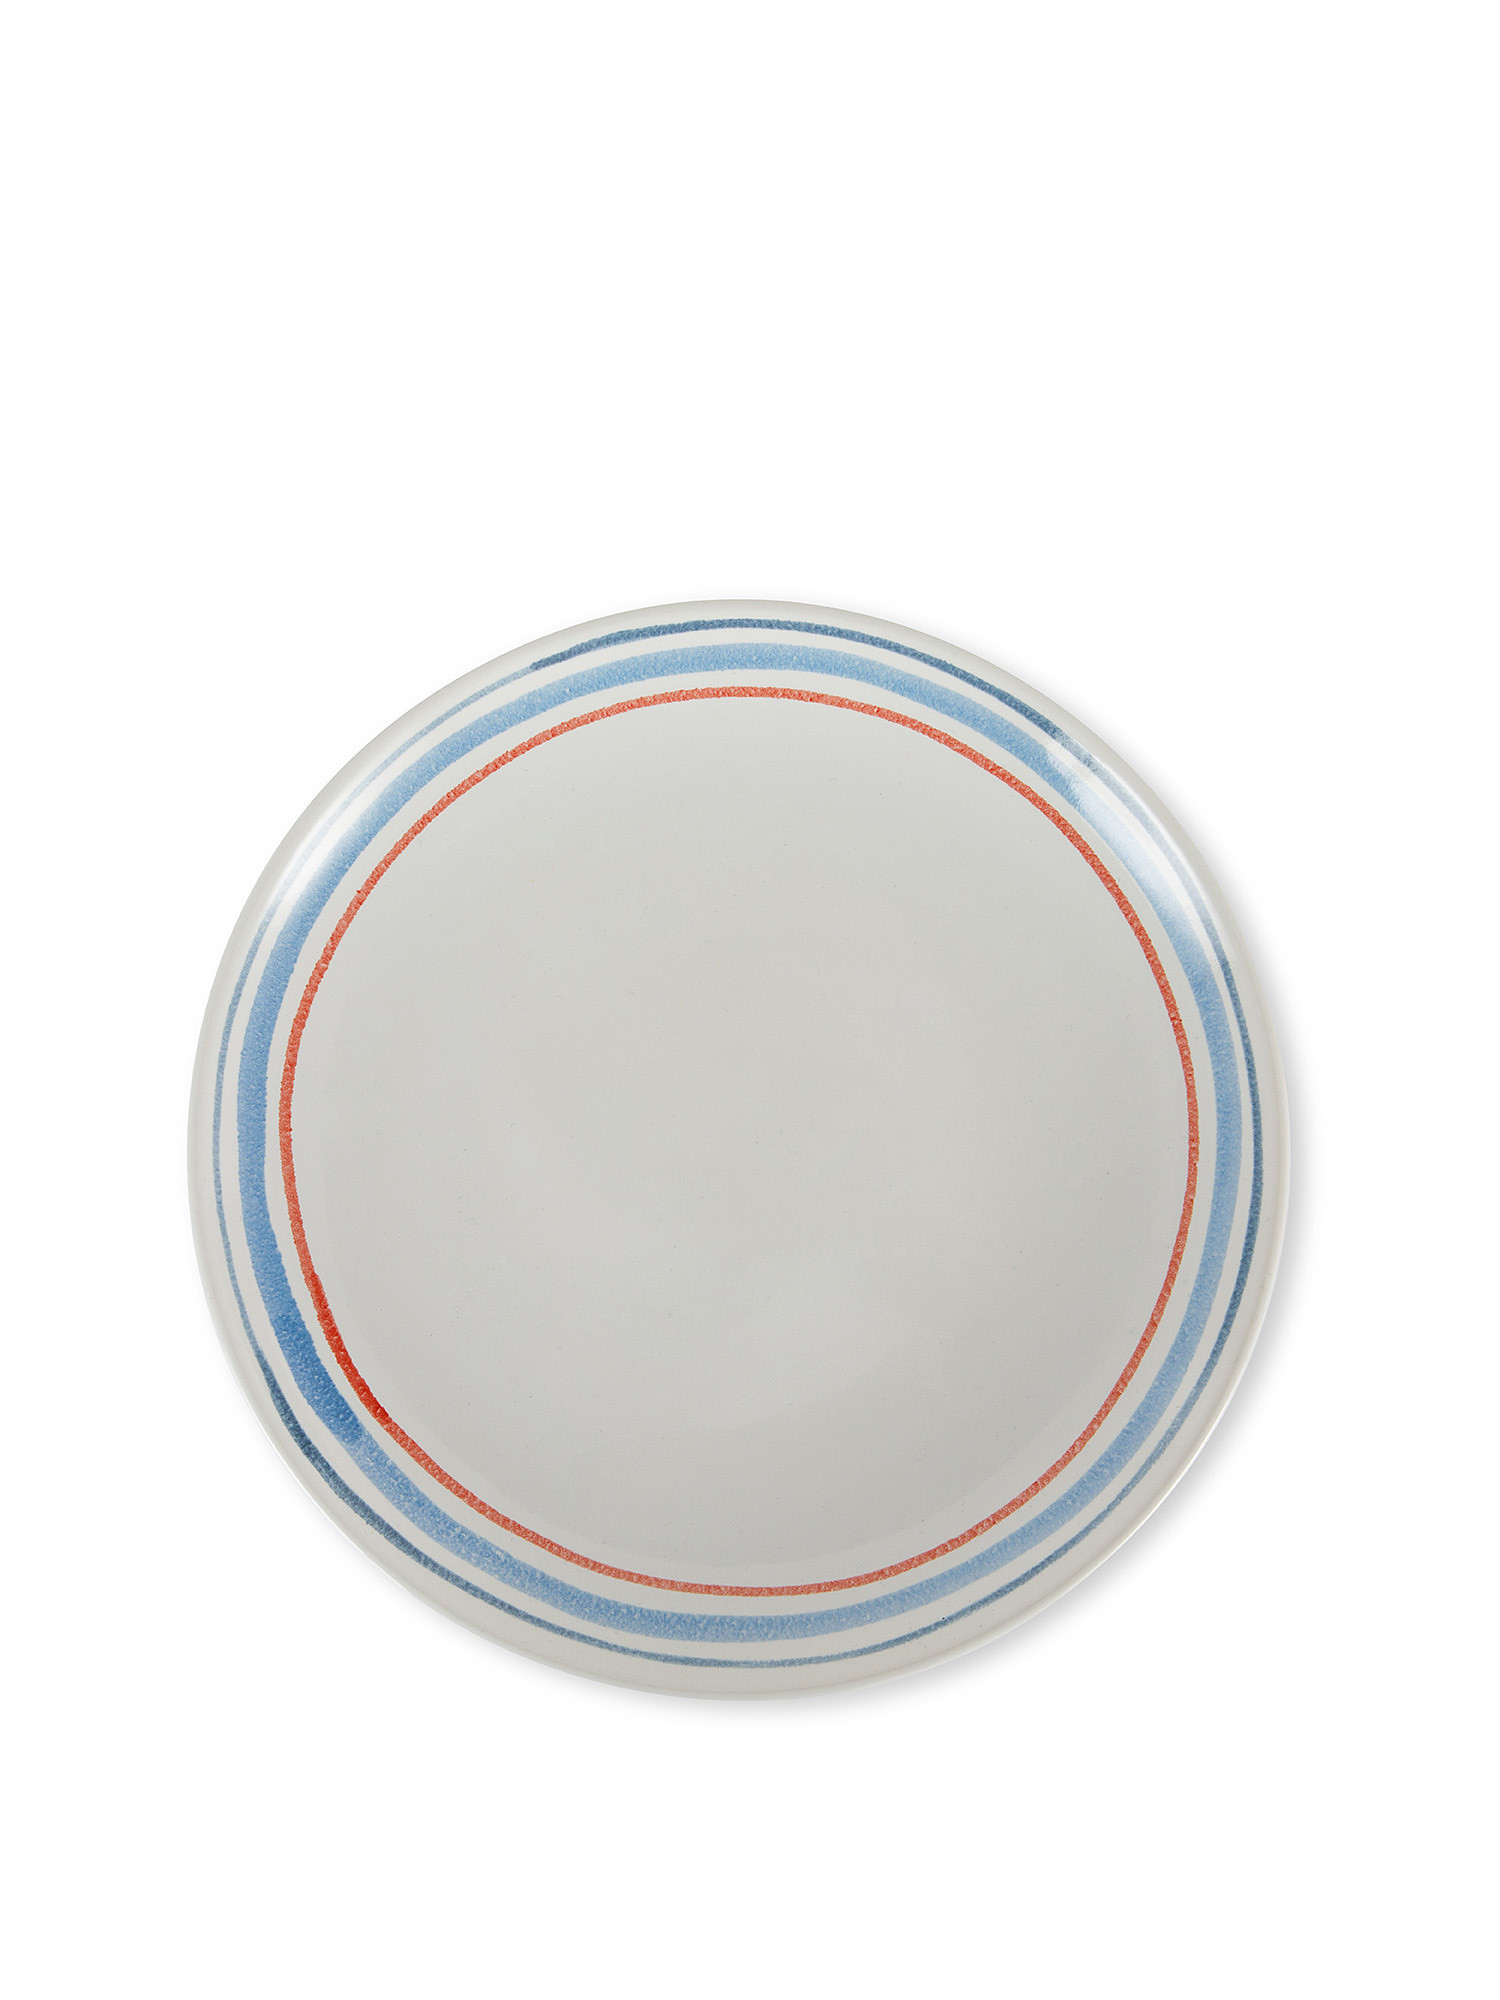 Piatto frutta ceramica decoro righe, Bianco, large image number 0